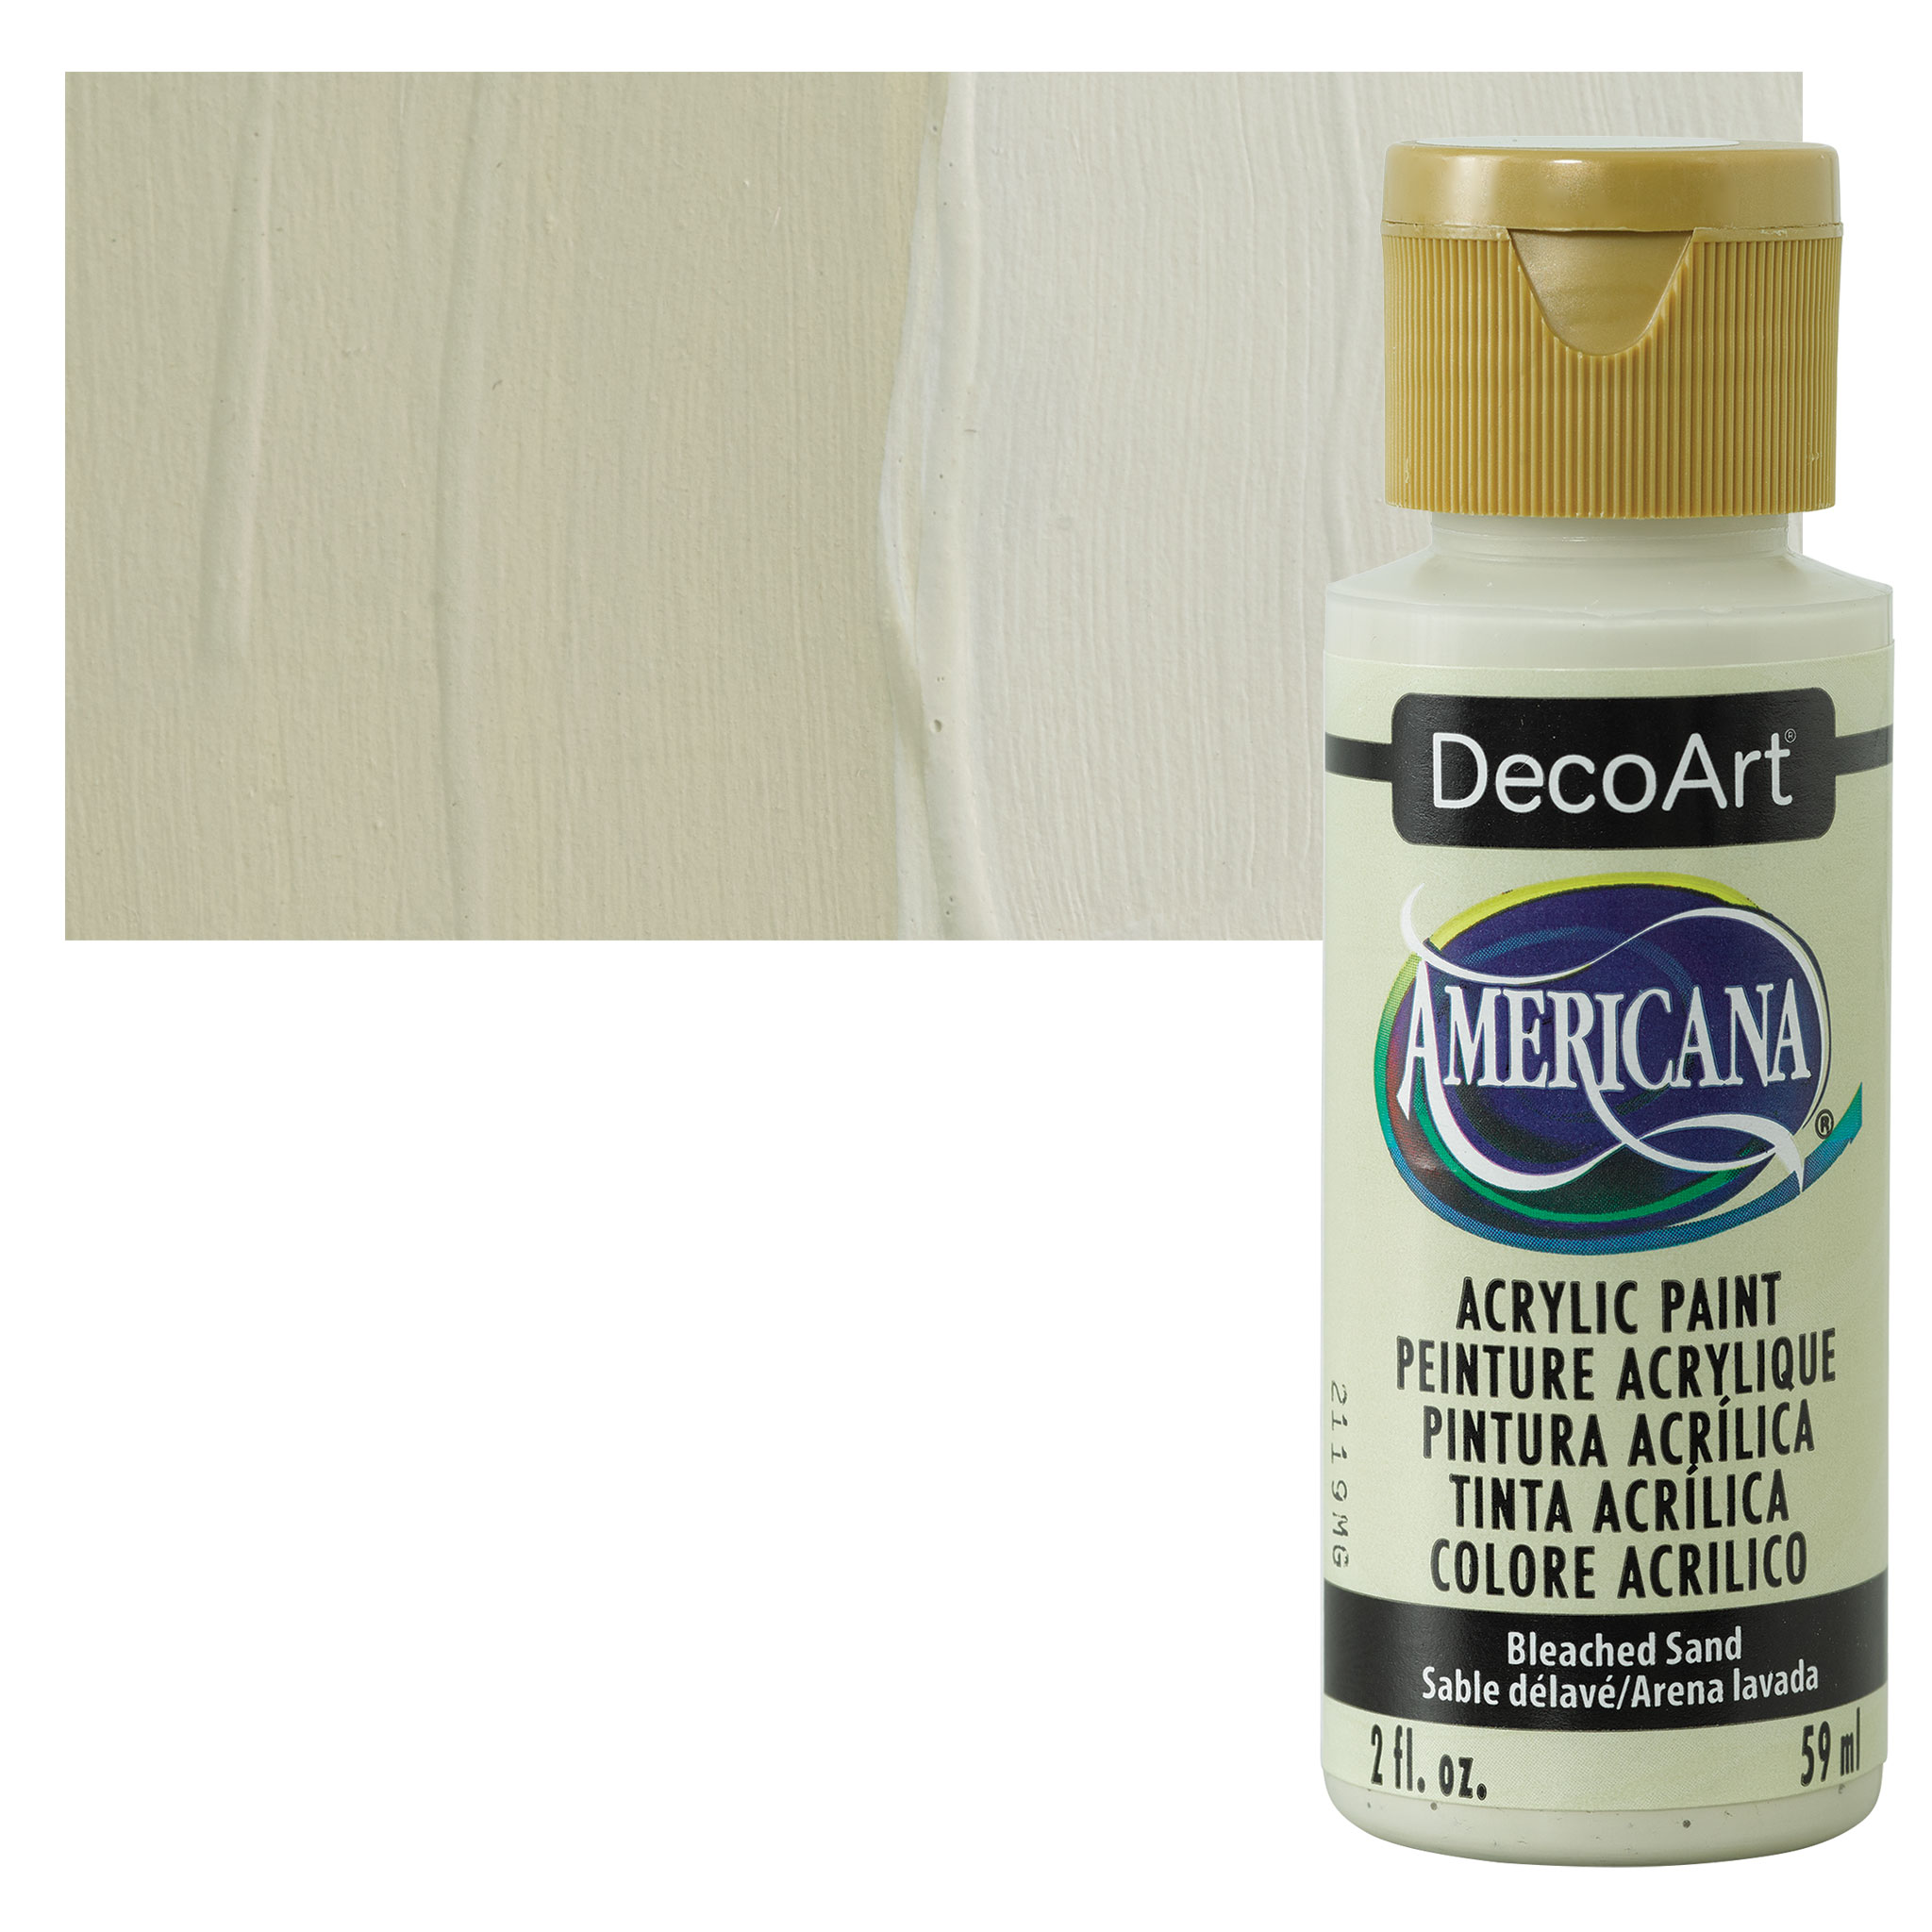 DecoArt Americana Acrylic Paint - Buttermilk, 2 oz